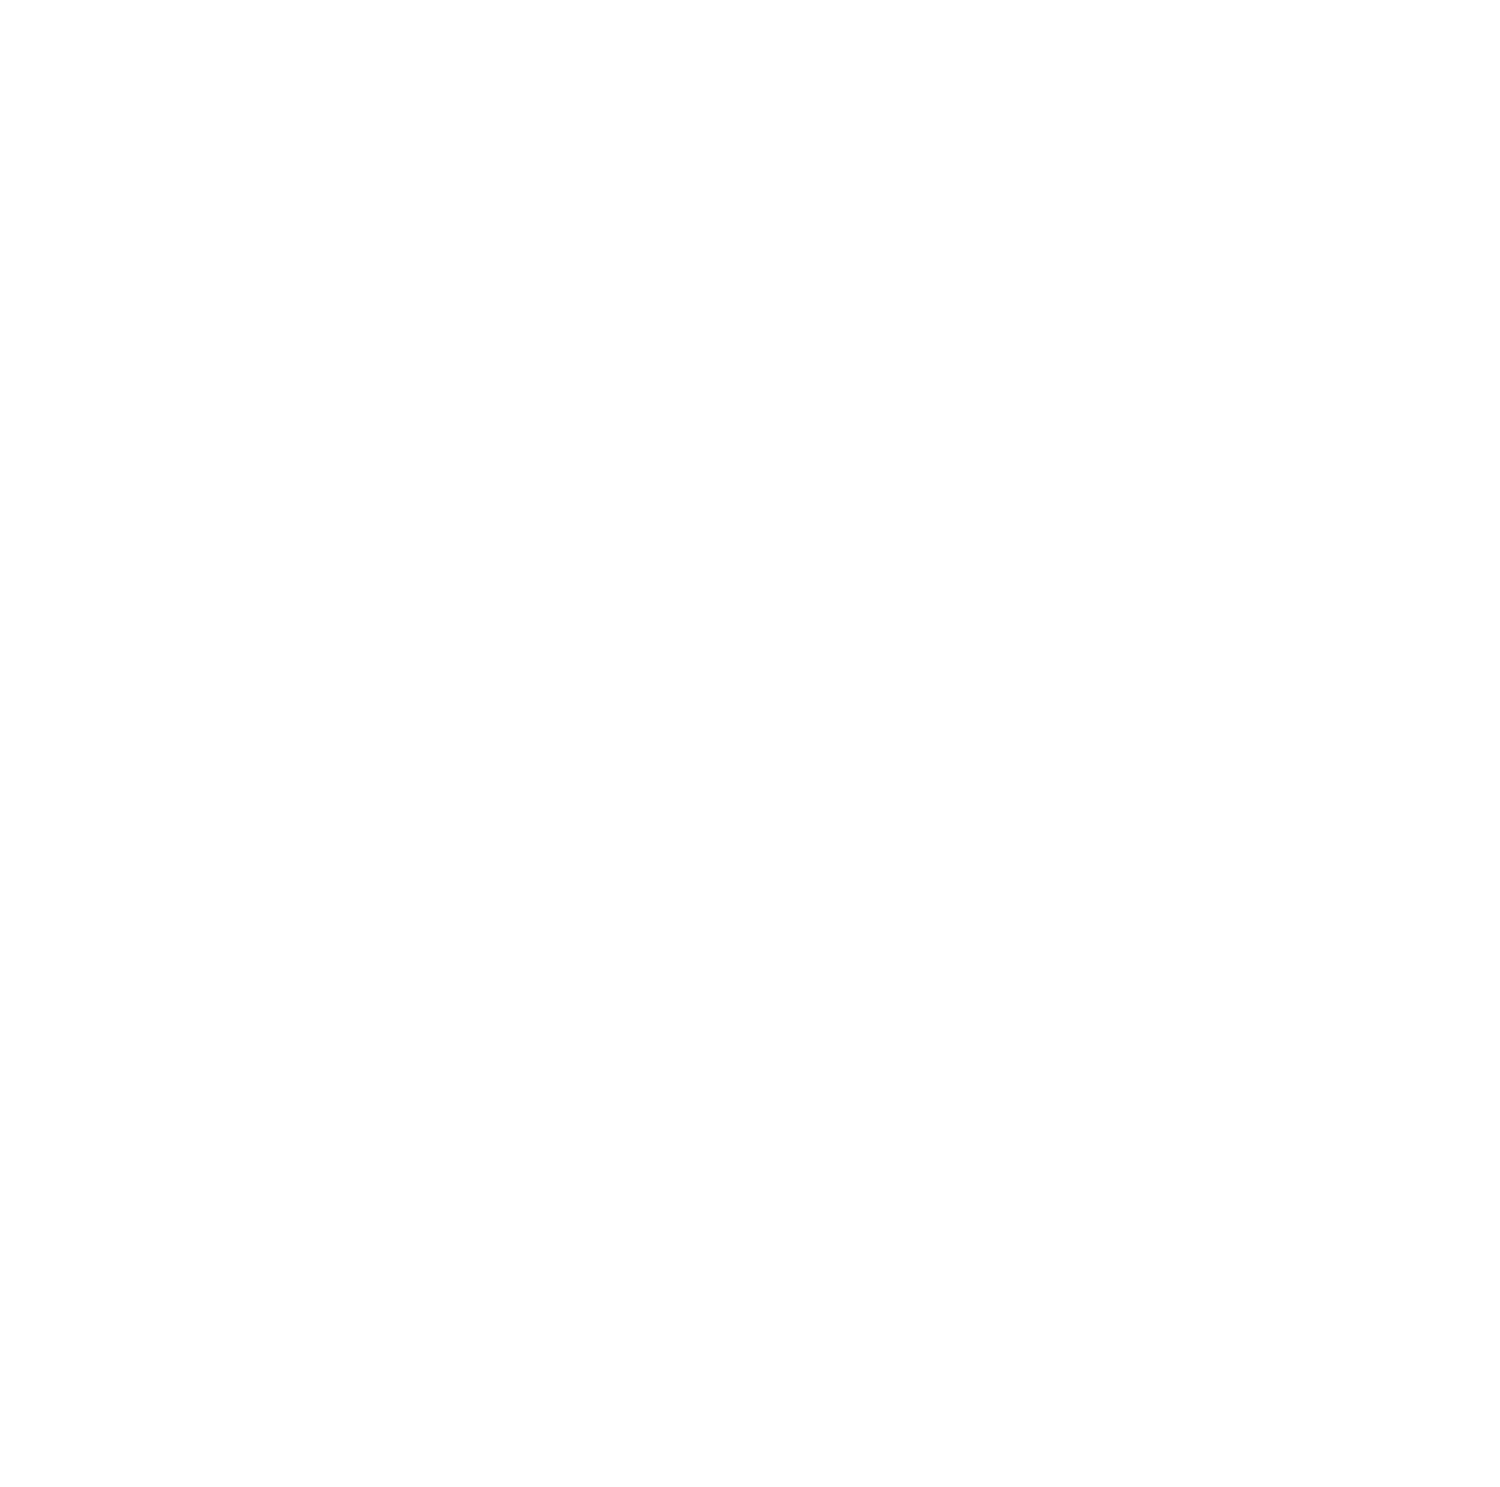 Sam Brown